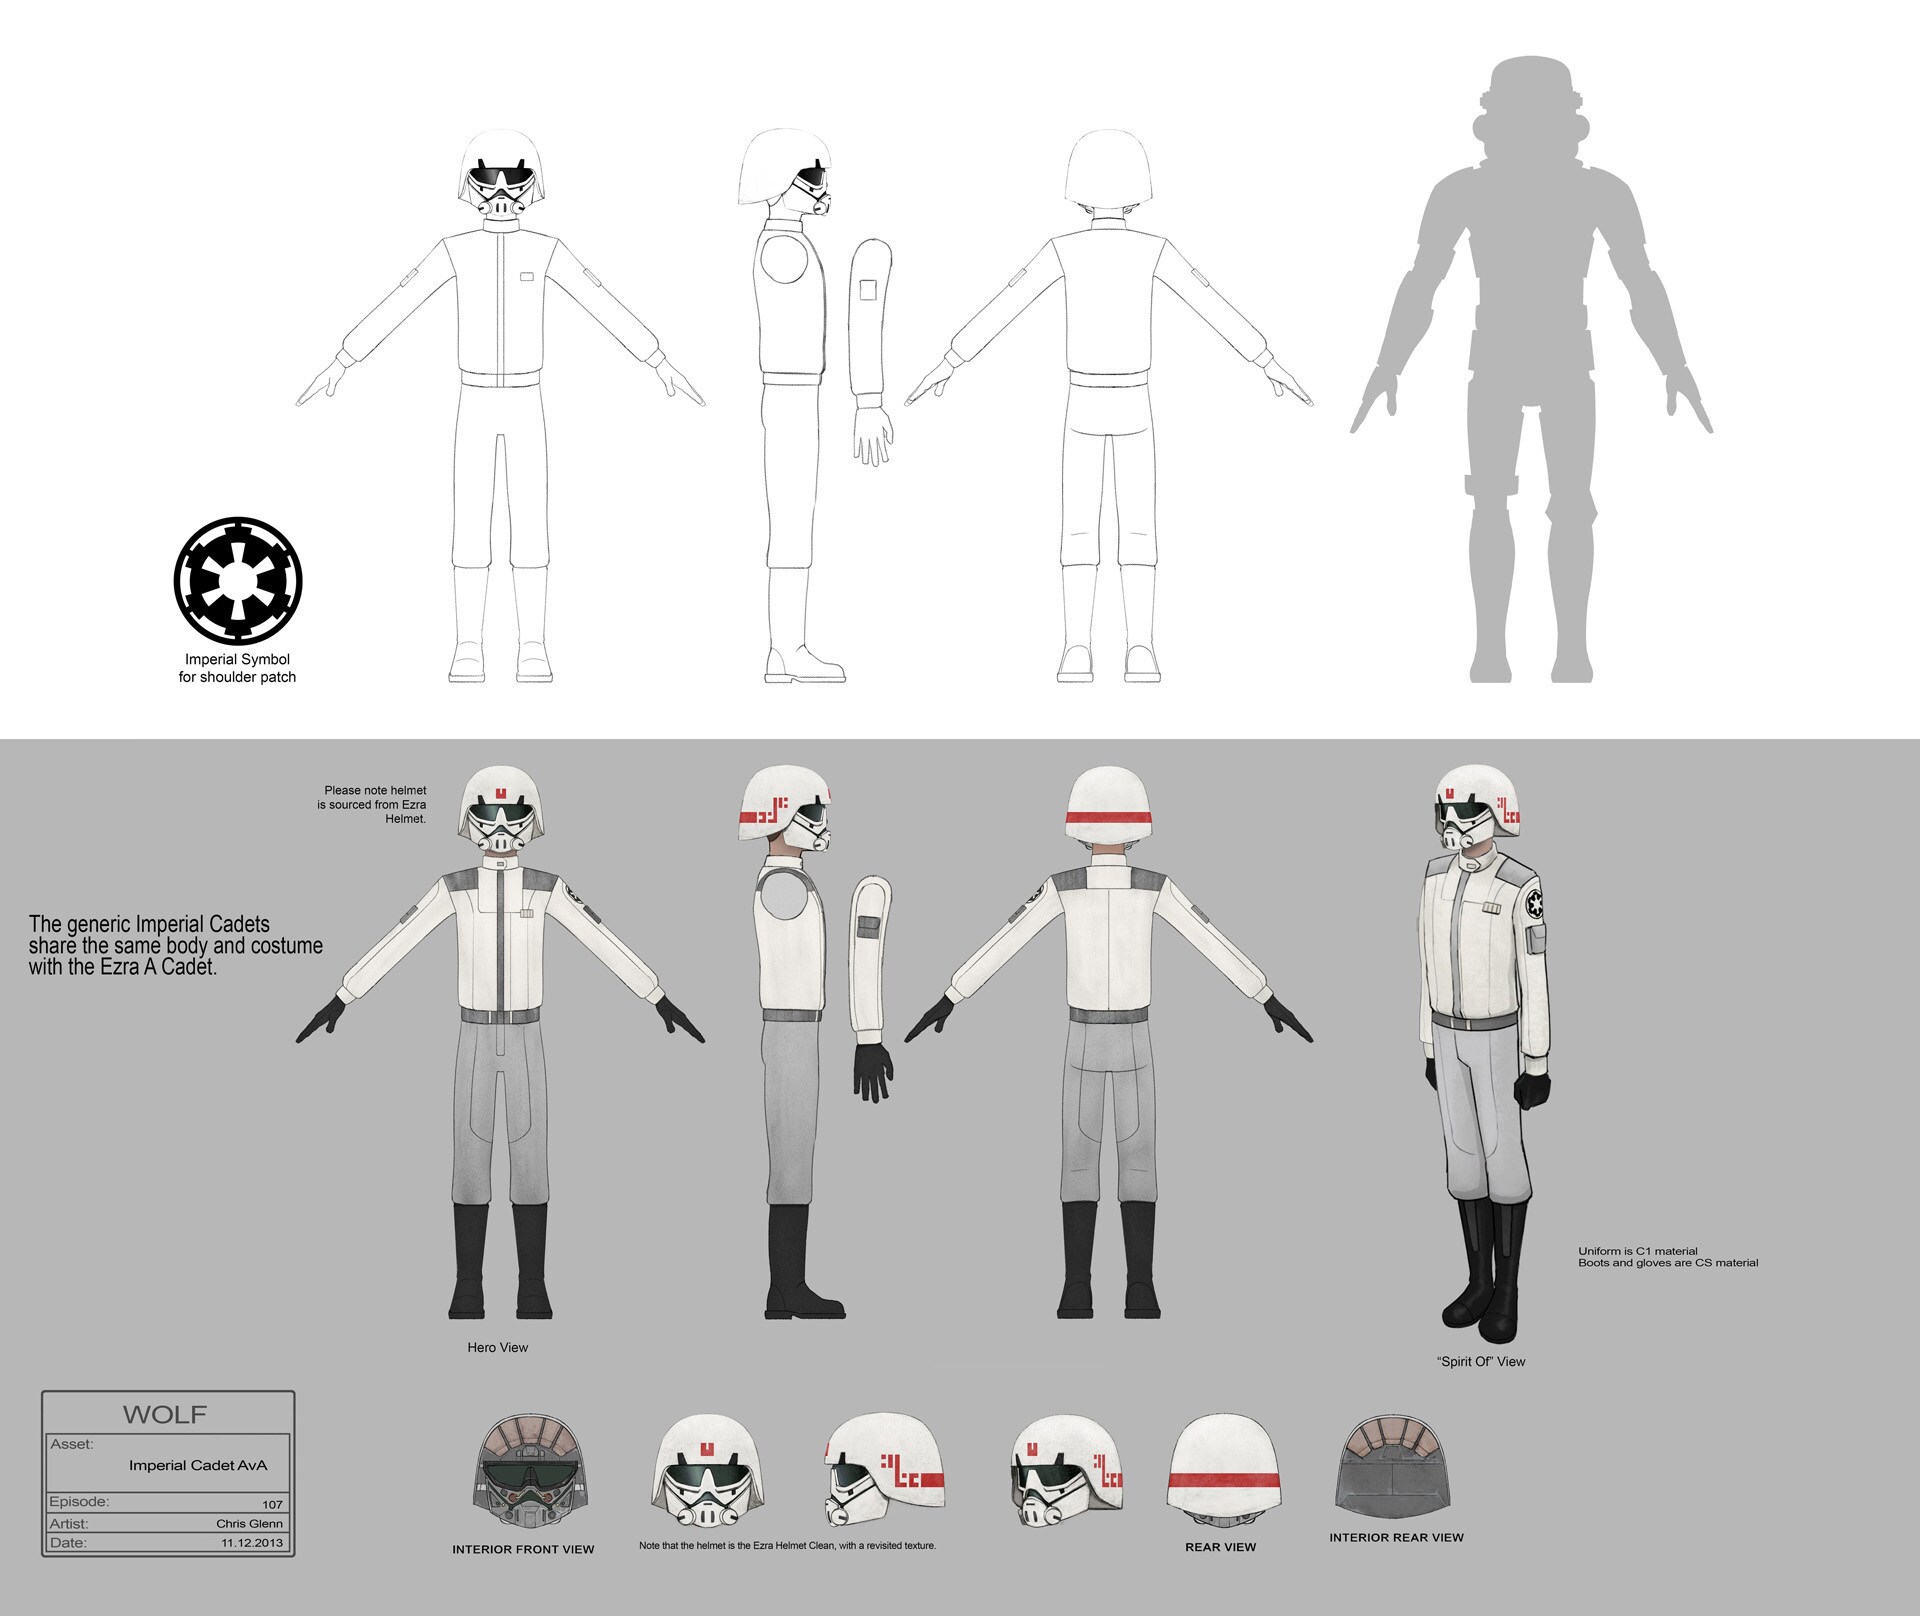 Imperial cadet full character illustration by Chris Glenn.